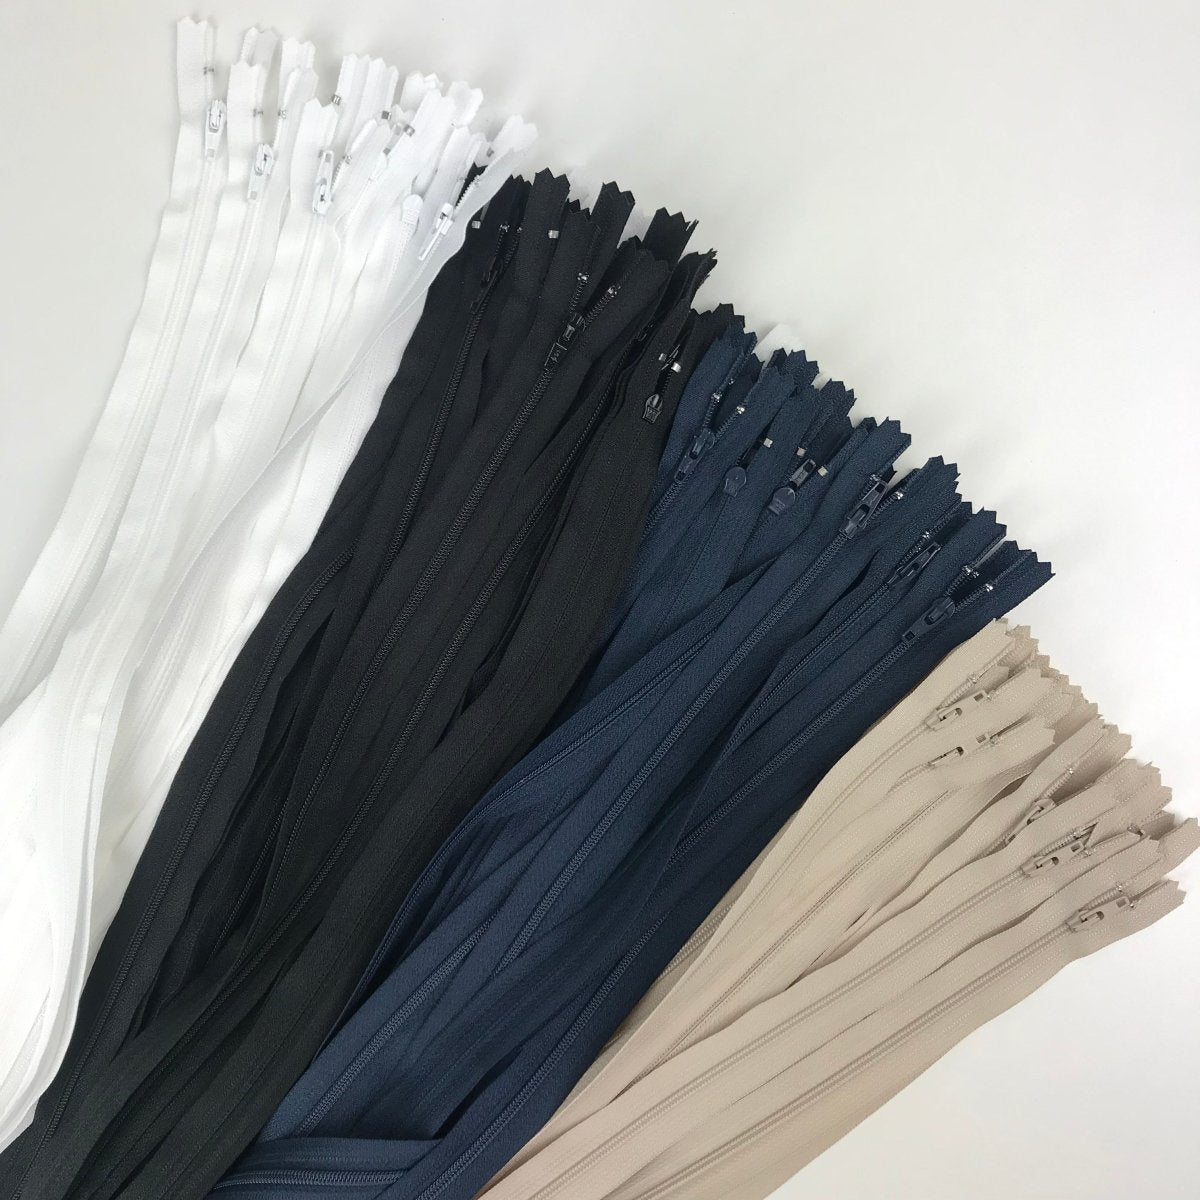 YKK Zipper - Skirt and Dress - 61cm (24") - Sewing Gem